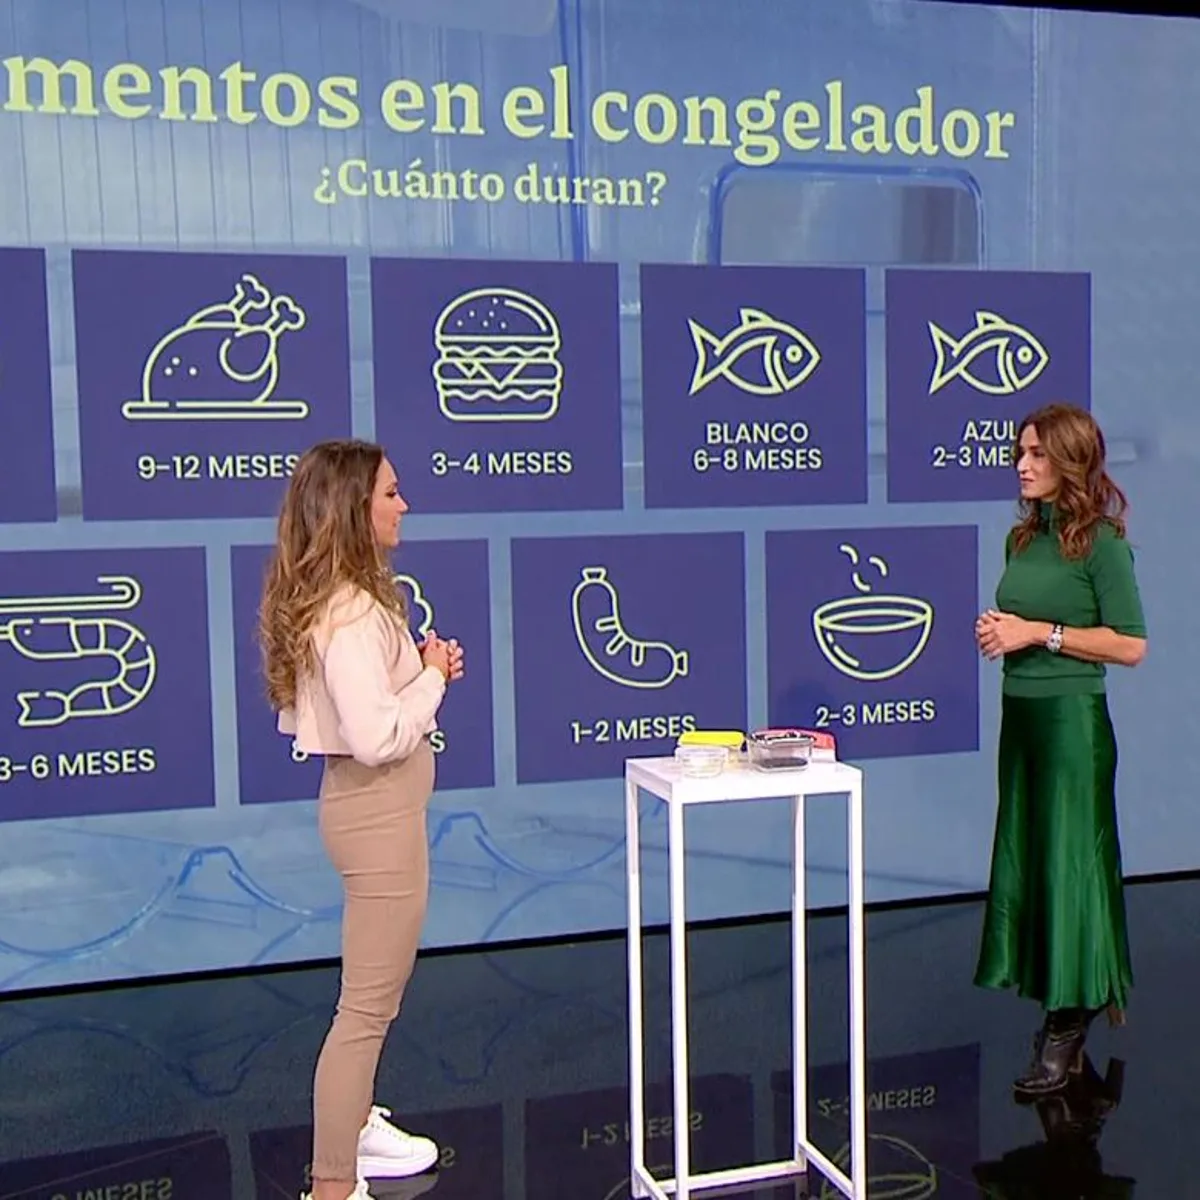 Blanca García-Orea, nutricionista: El problema no es comer turrón una vez  al año, sino que esté desde septiembre en el súper